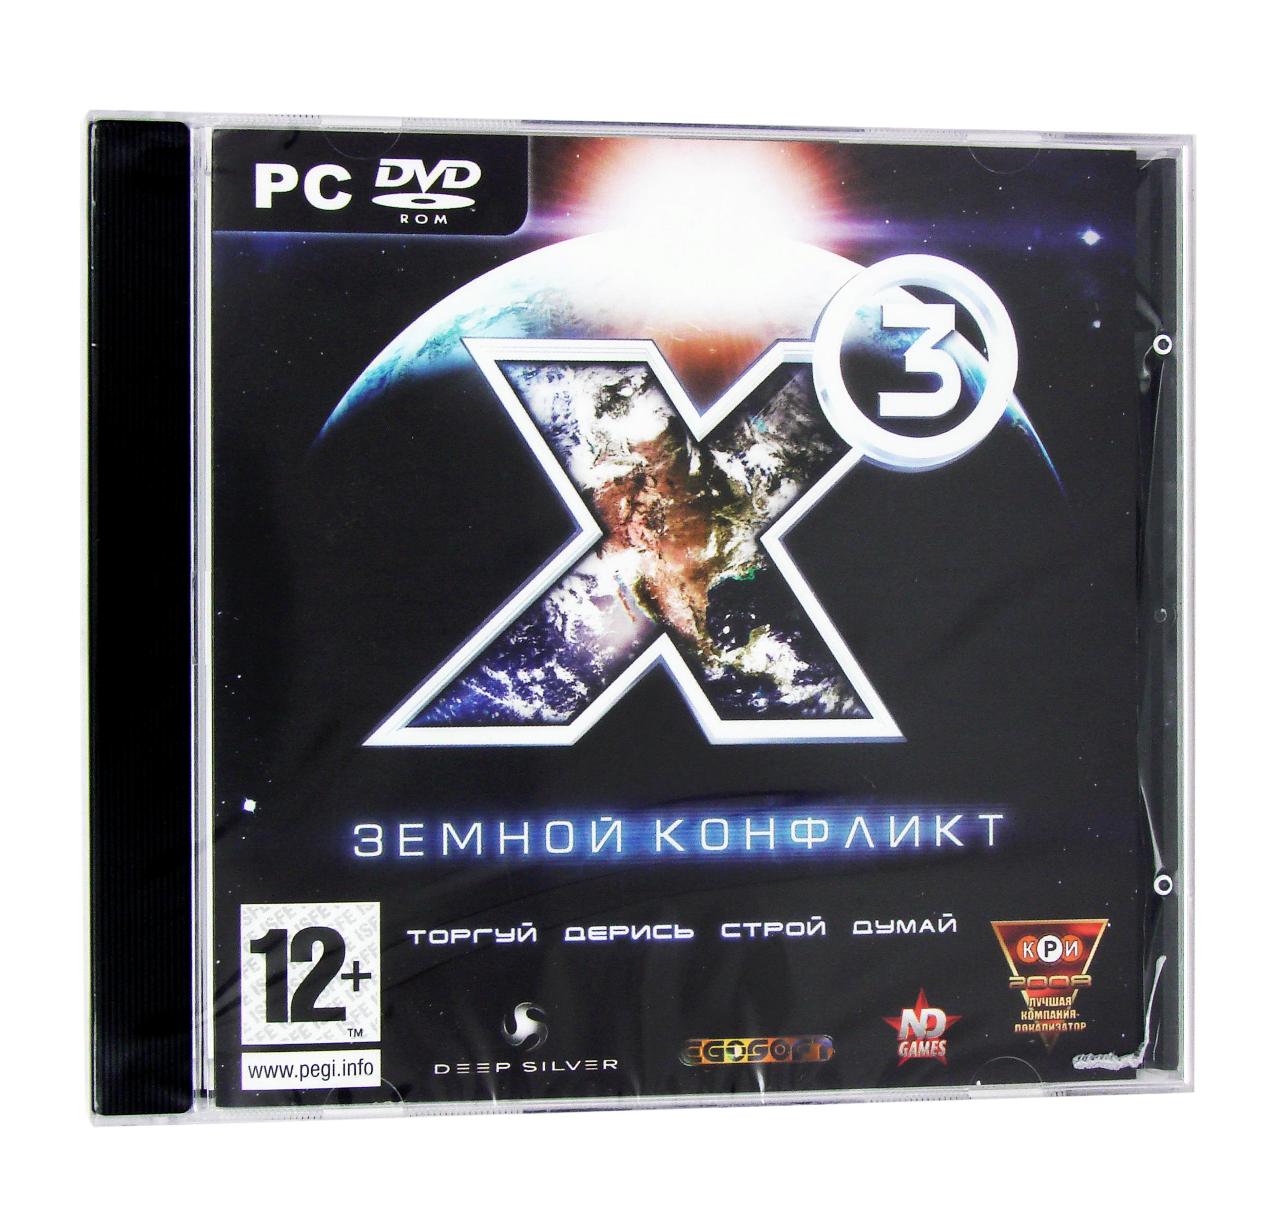 Компьютерный компакт-диск X3: Земной конфликт (ПК), фирма "Новый диск", 1DVD